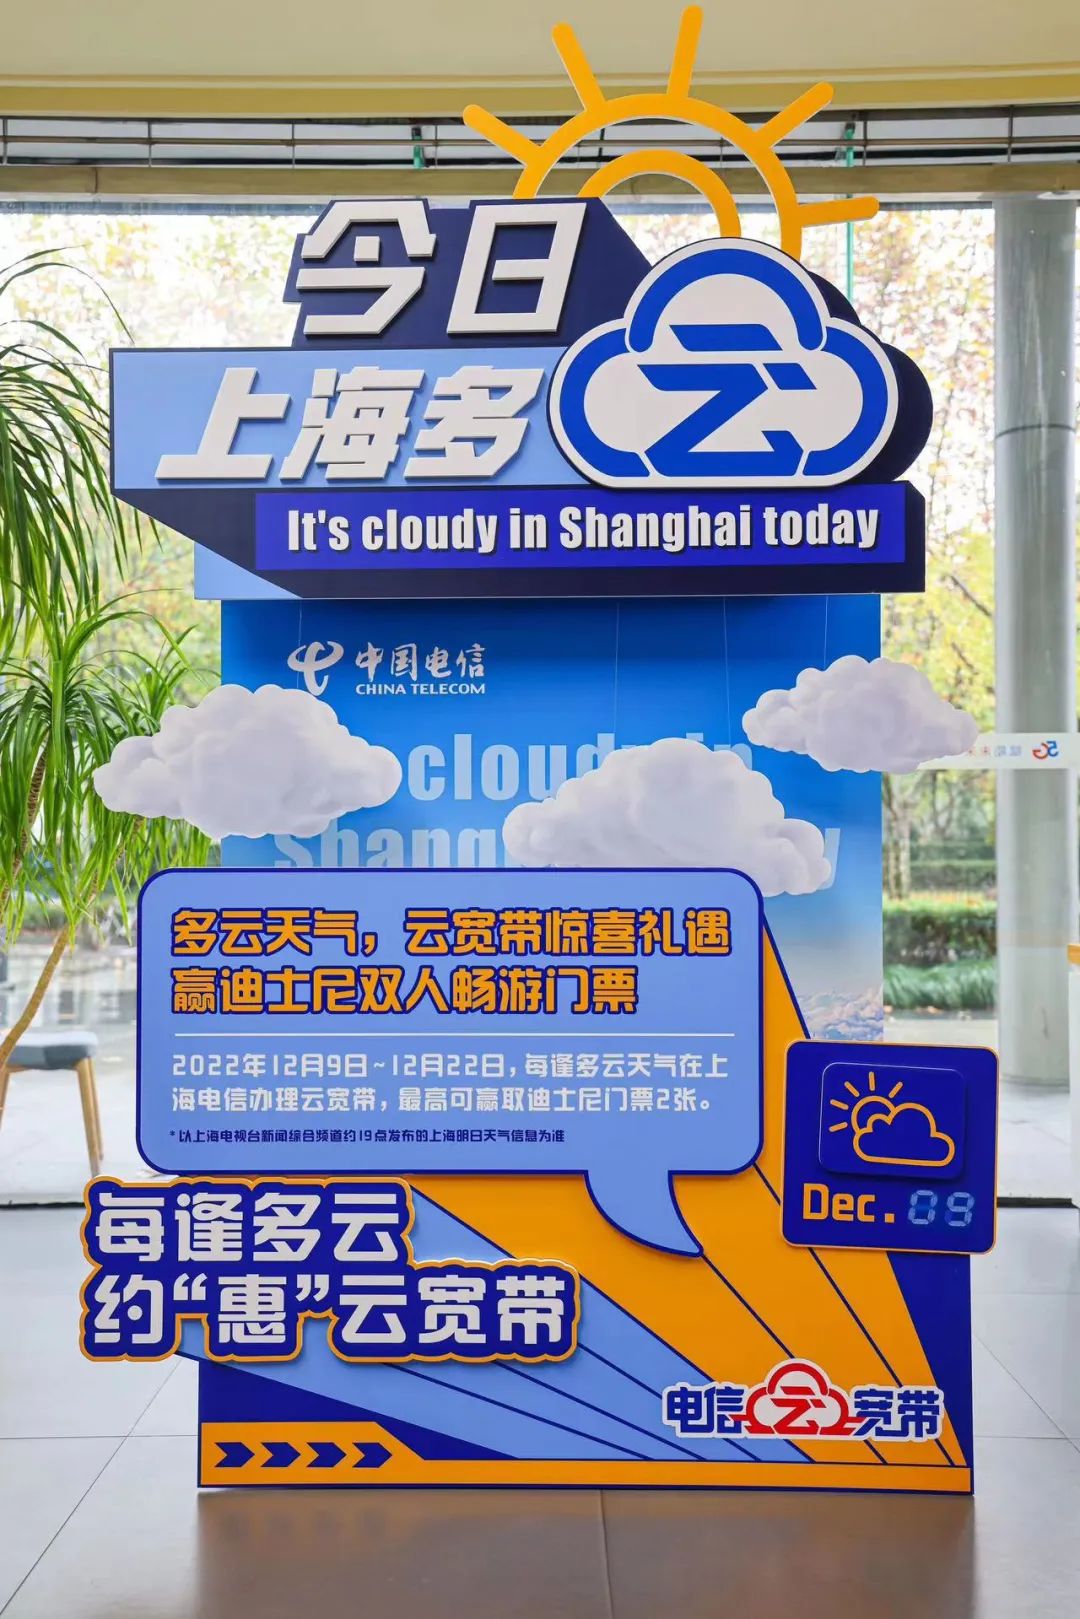 上海电信云宽带打造「多云」装置